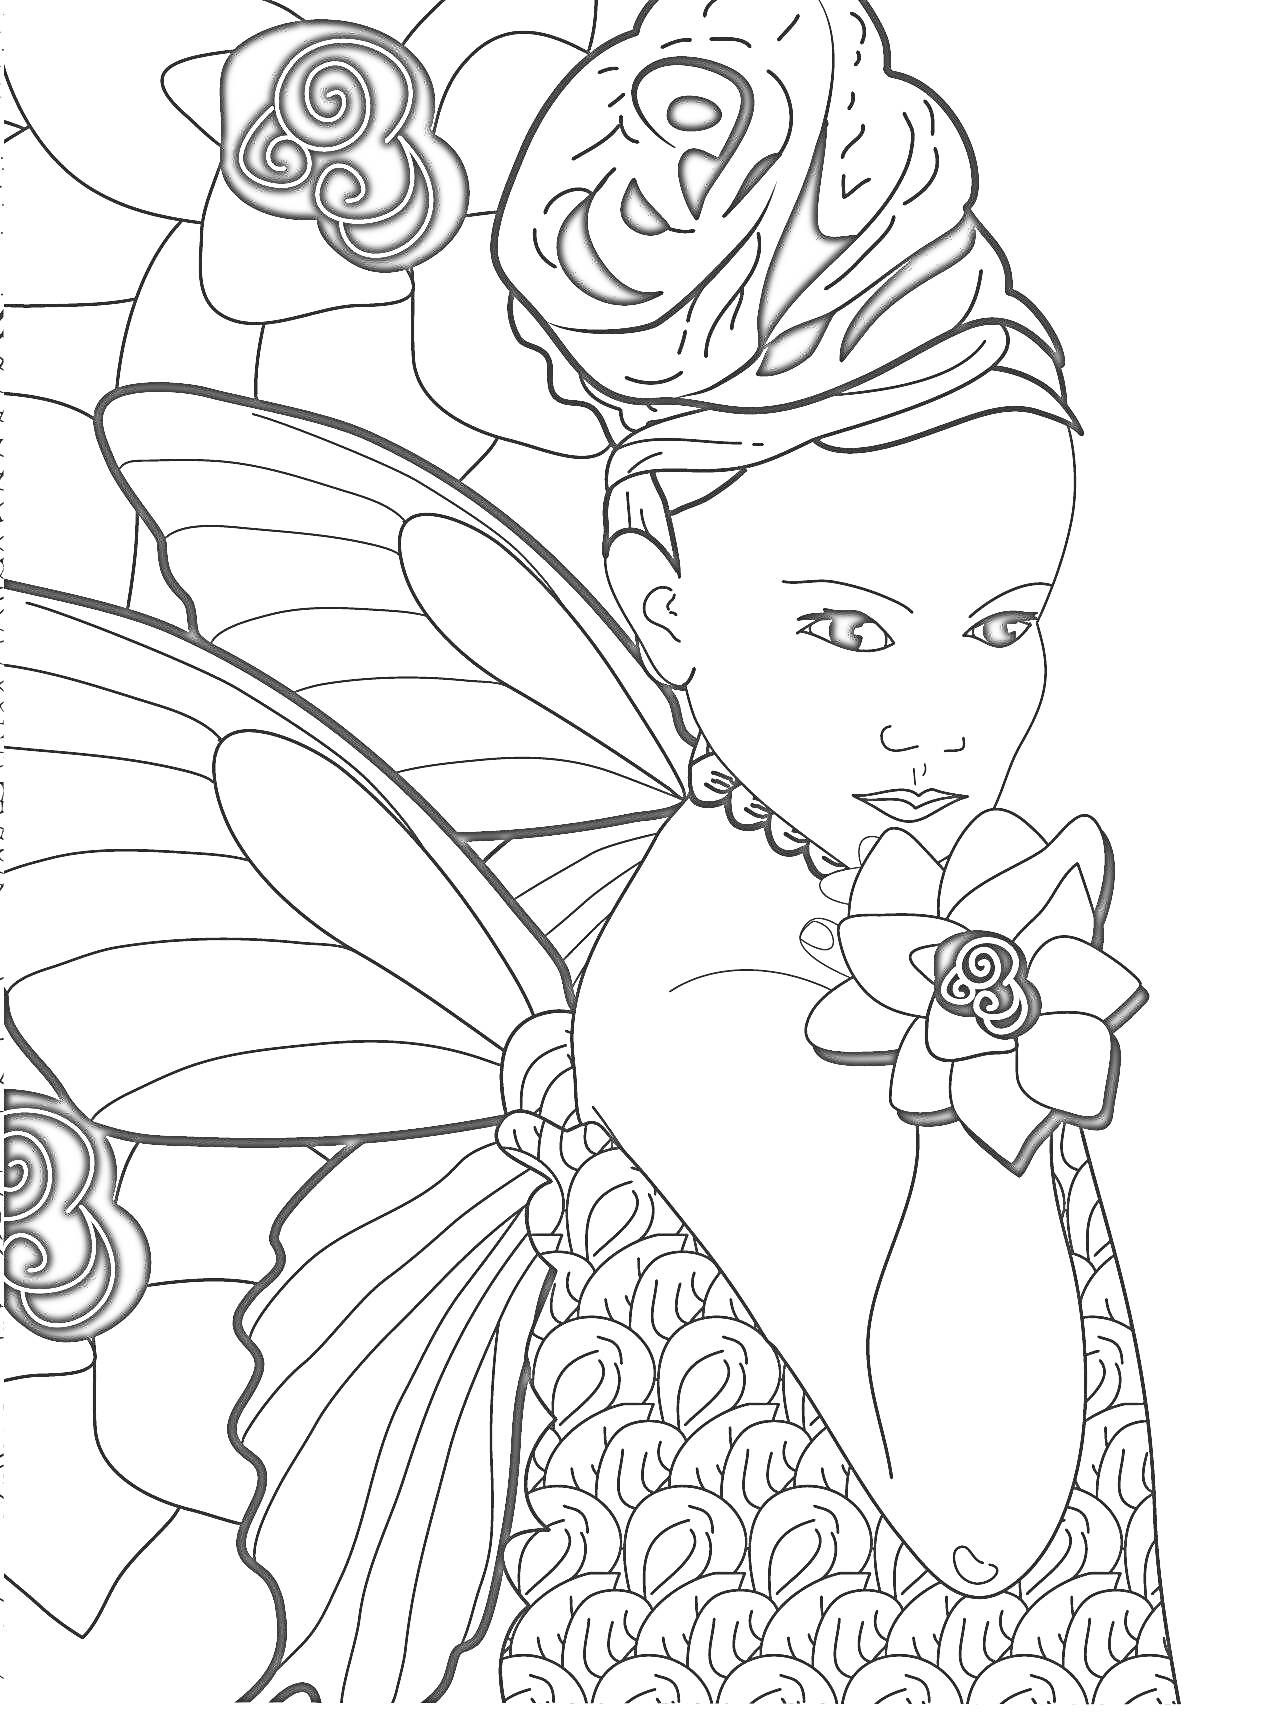 Раскраска Фея с цветами, крыльями и узорами на платье и платке